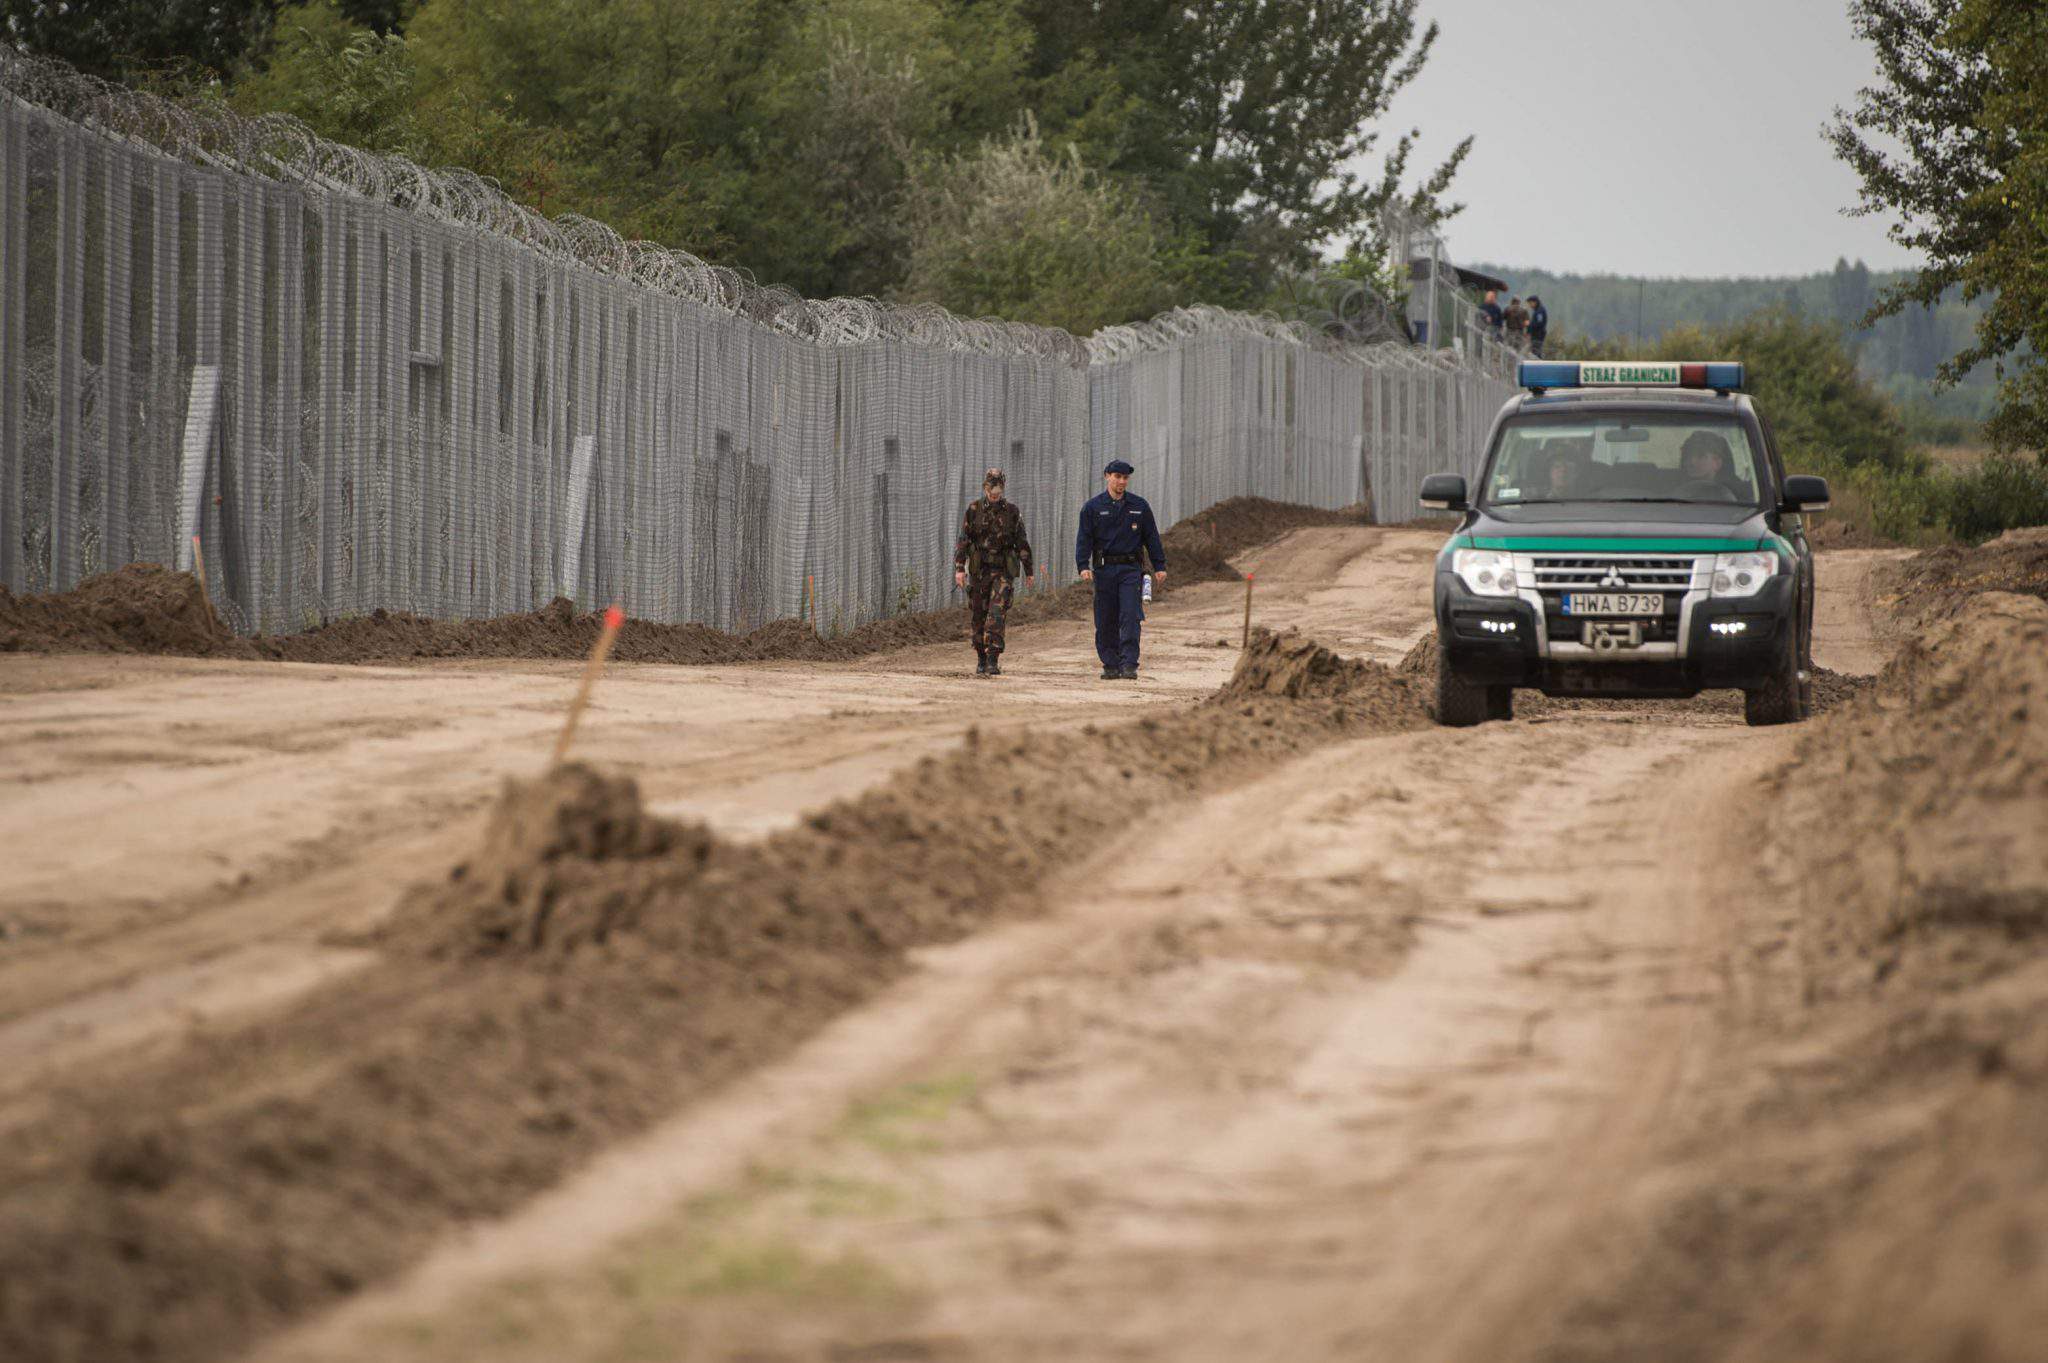 migrație - armata de gard de frontieră a Ungariei